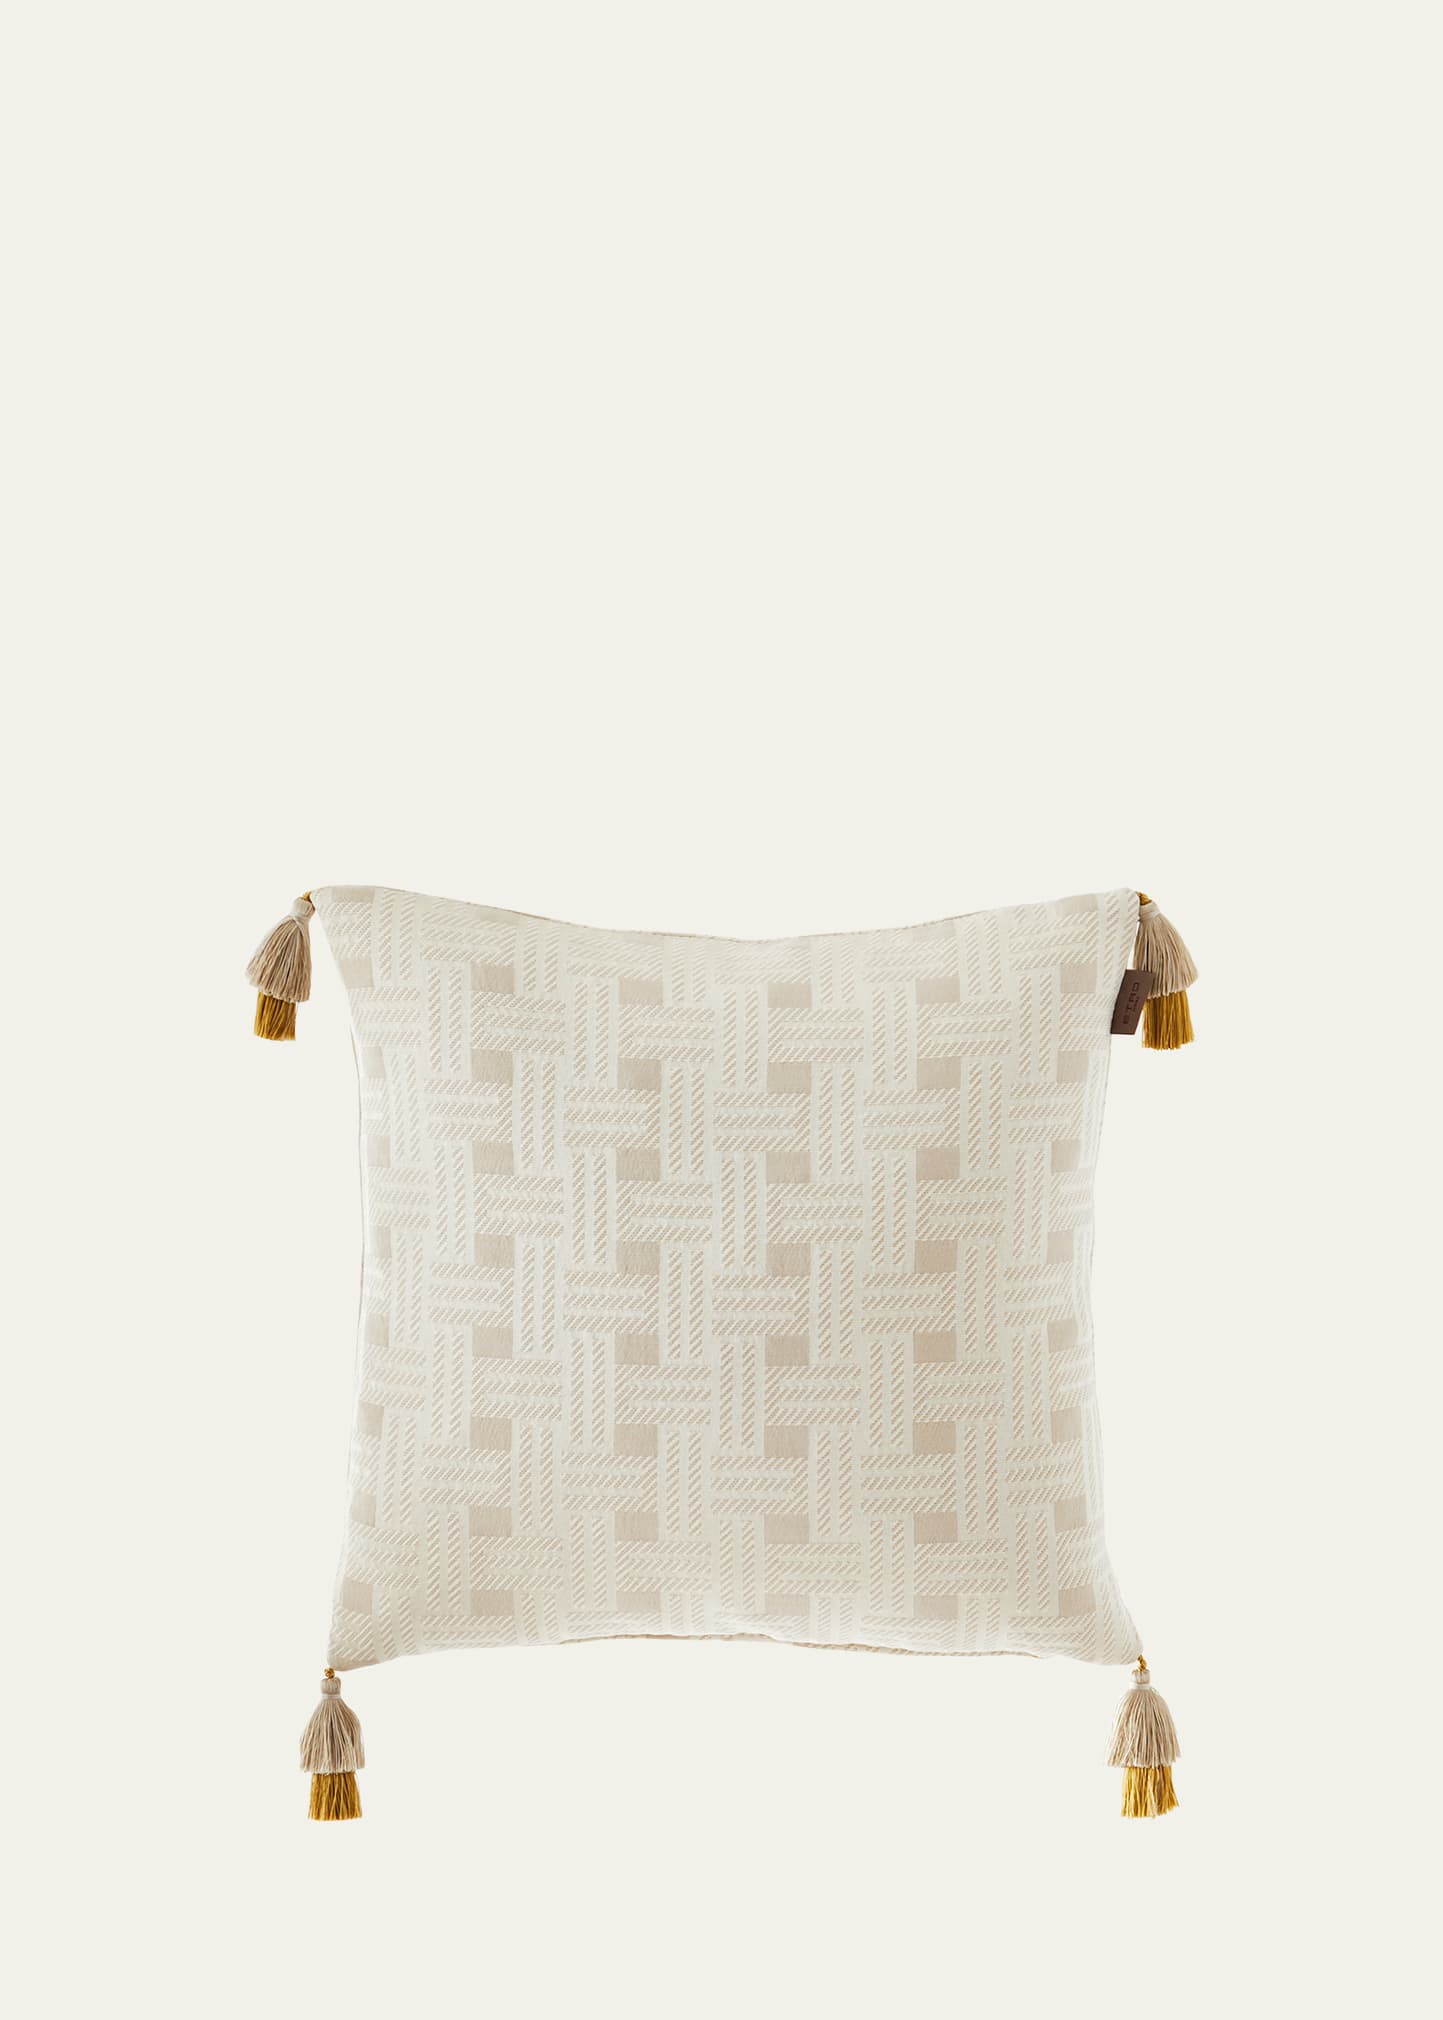 Etro Zenith Pillow With Tassels, 18"sq. In Beige